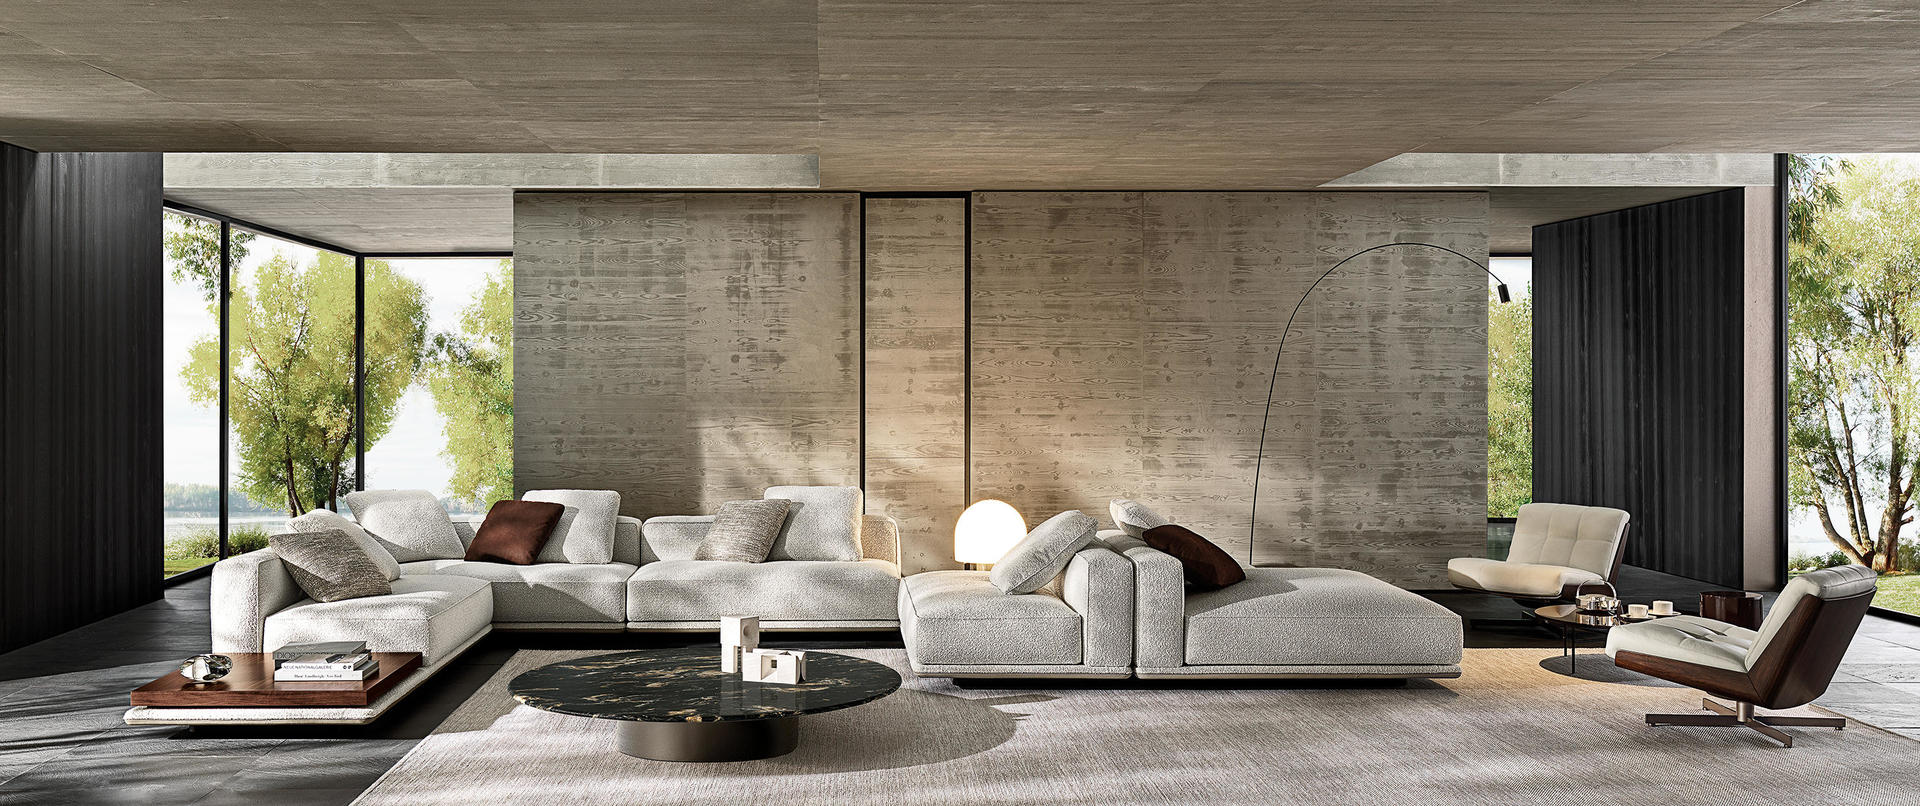 HORA Barneveld Minotti Horizonte bank modulaire sofa design meubelen designmeubelen 2.jpg